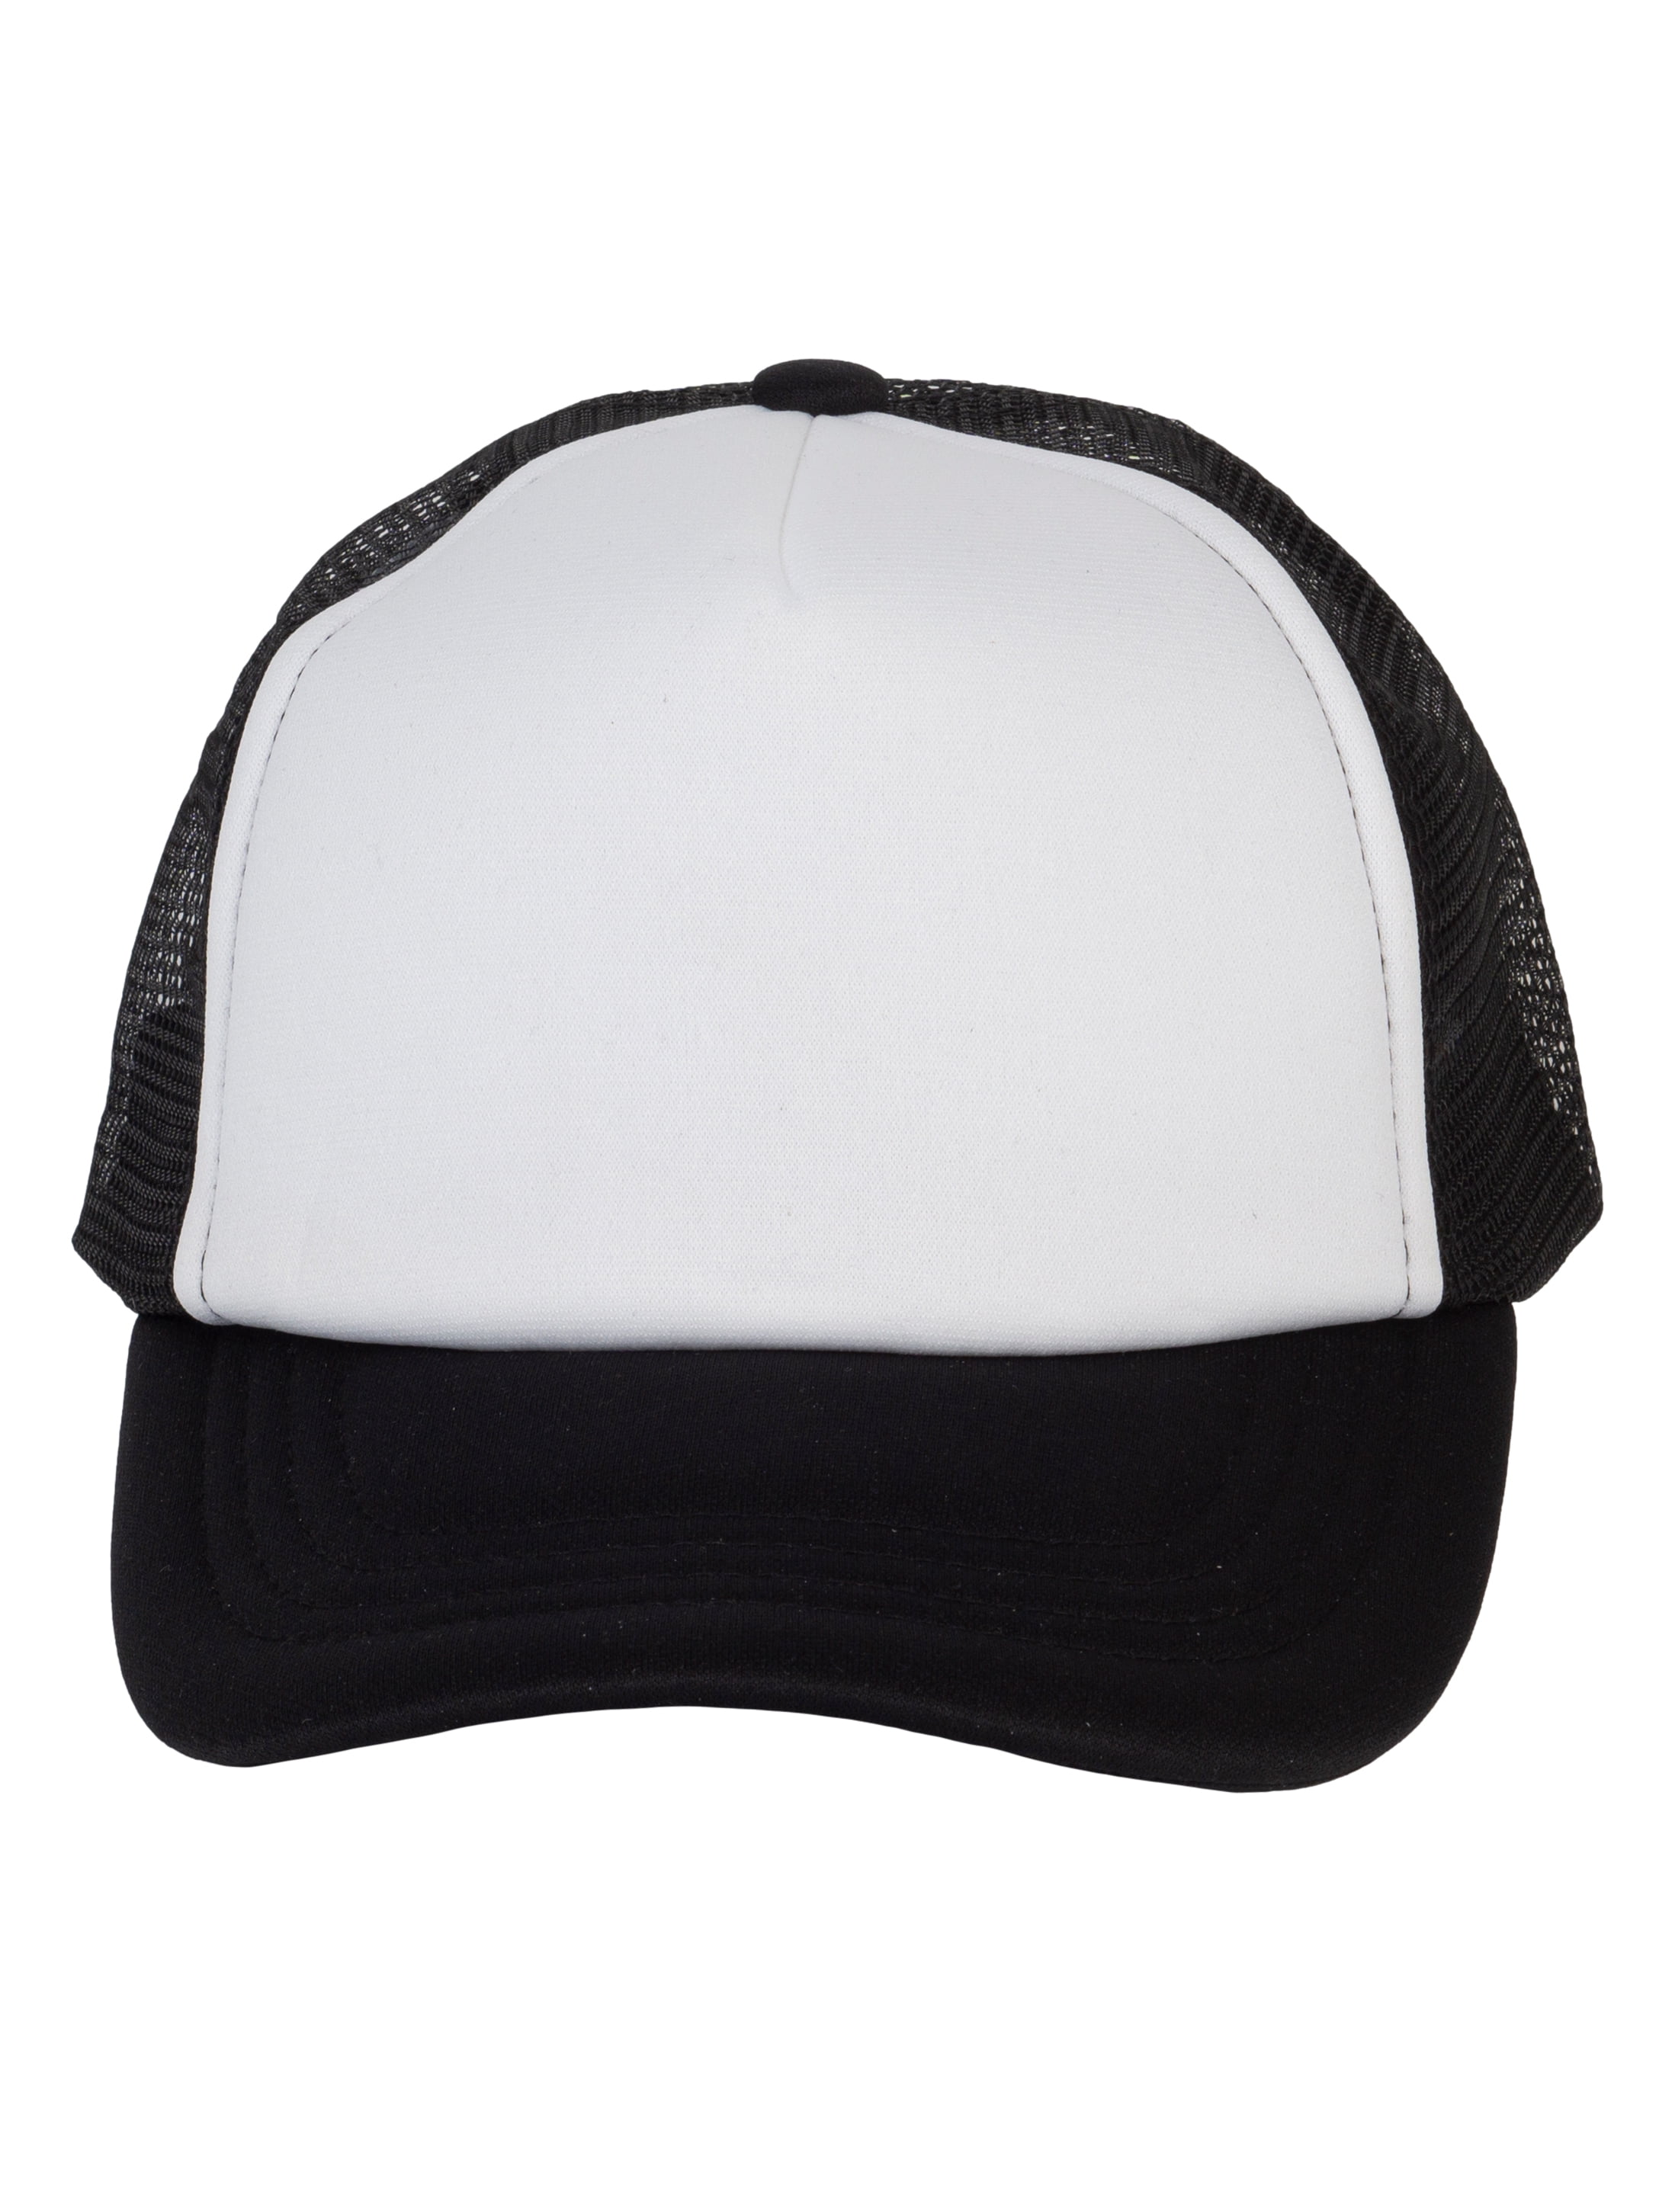 Baseball Kids Hat - Cap Youth Headwear Trucker Top Snapback White/Black